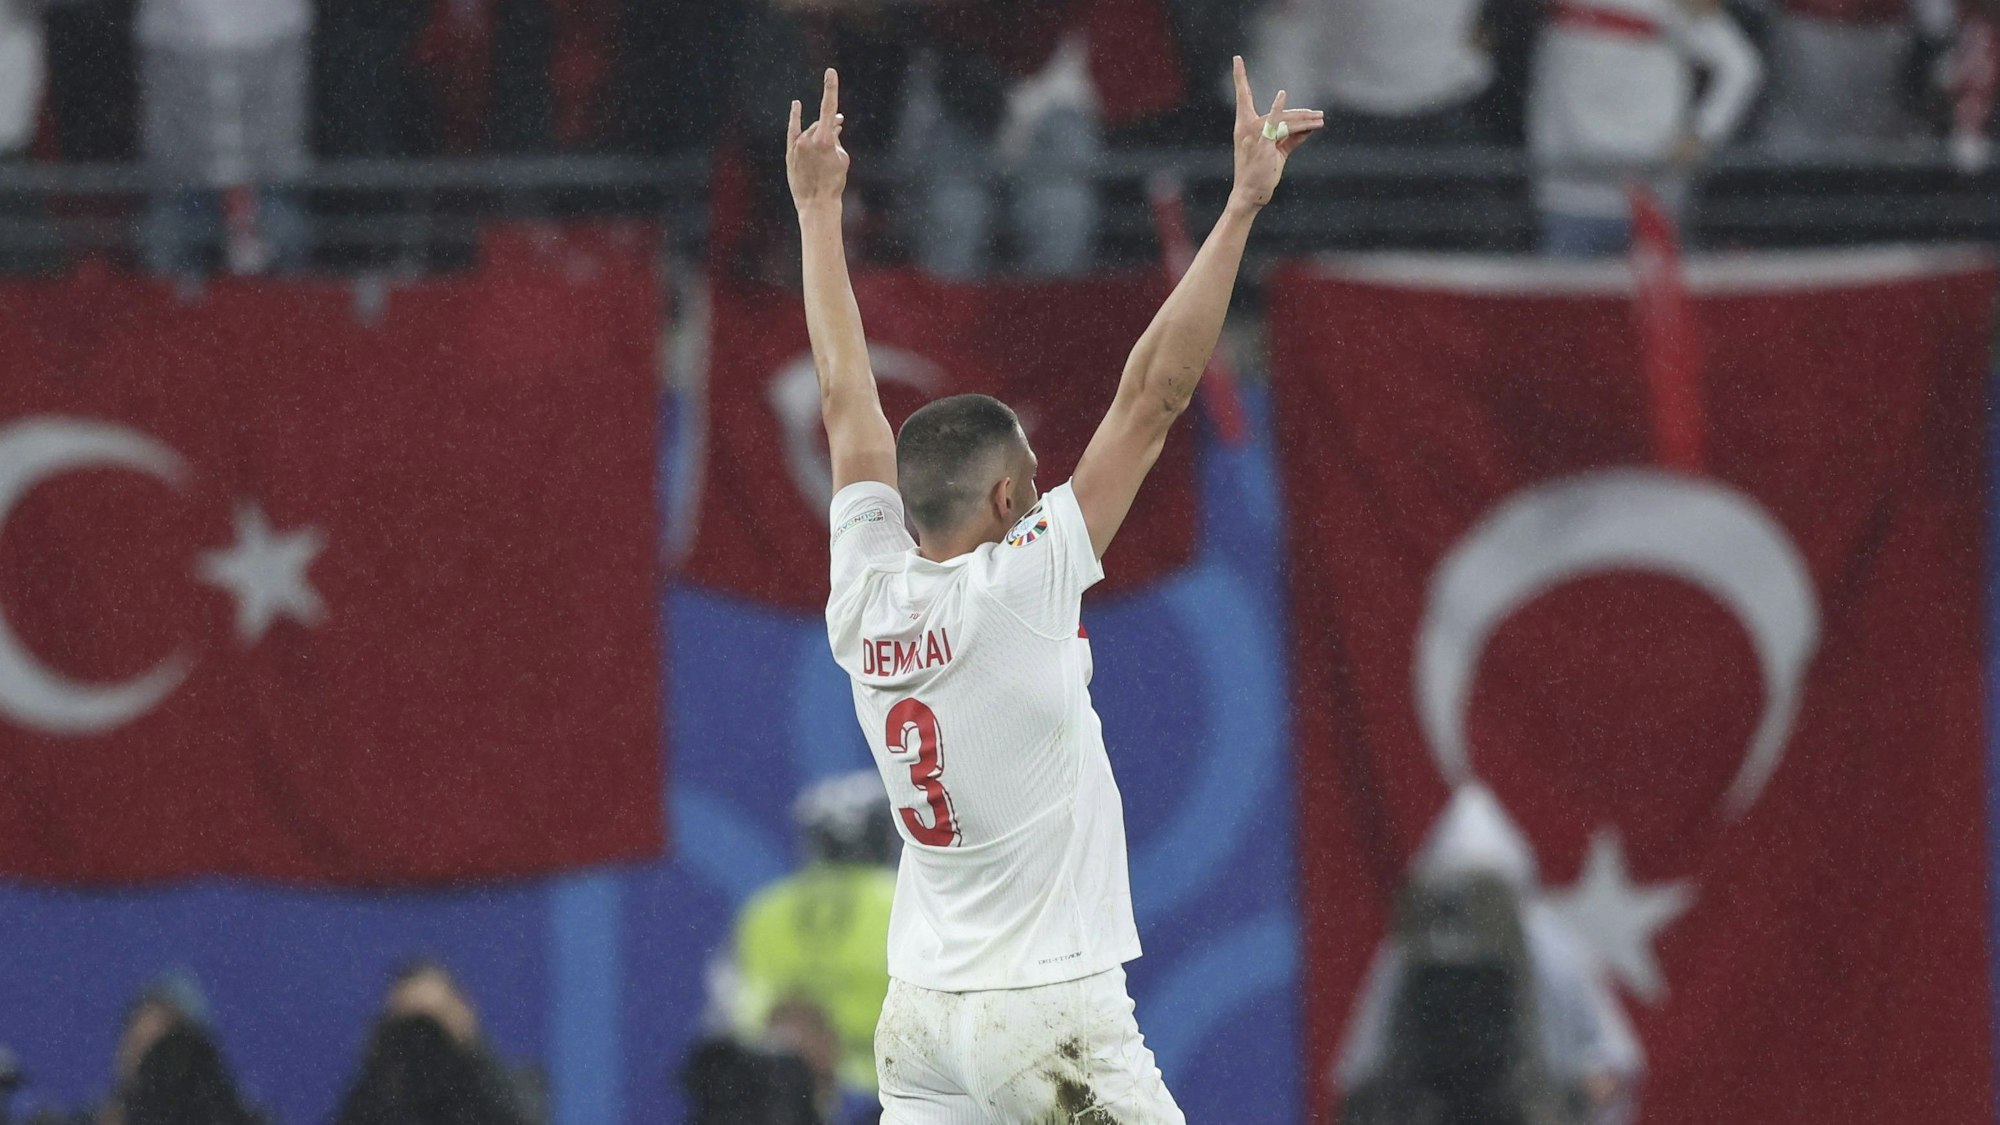 Merih demiral feiert sein Tor zum 2:0 für die Türkei im EM-Achtelfinale gegen Österreich mit dem Wolfsgruß.